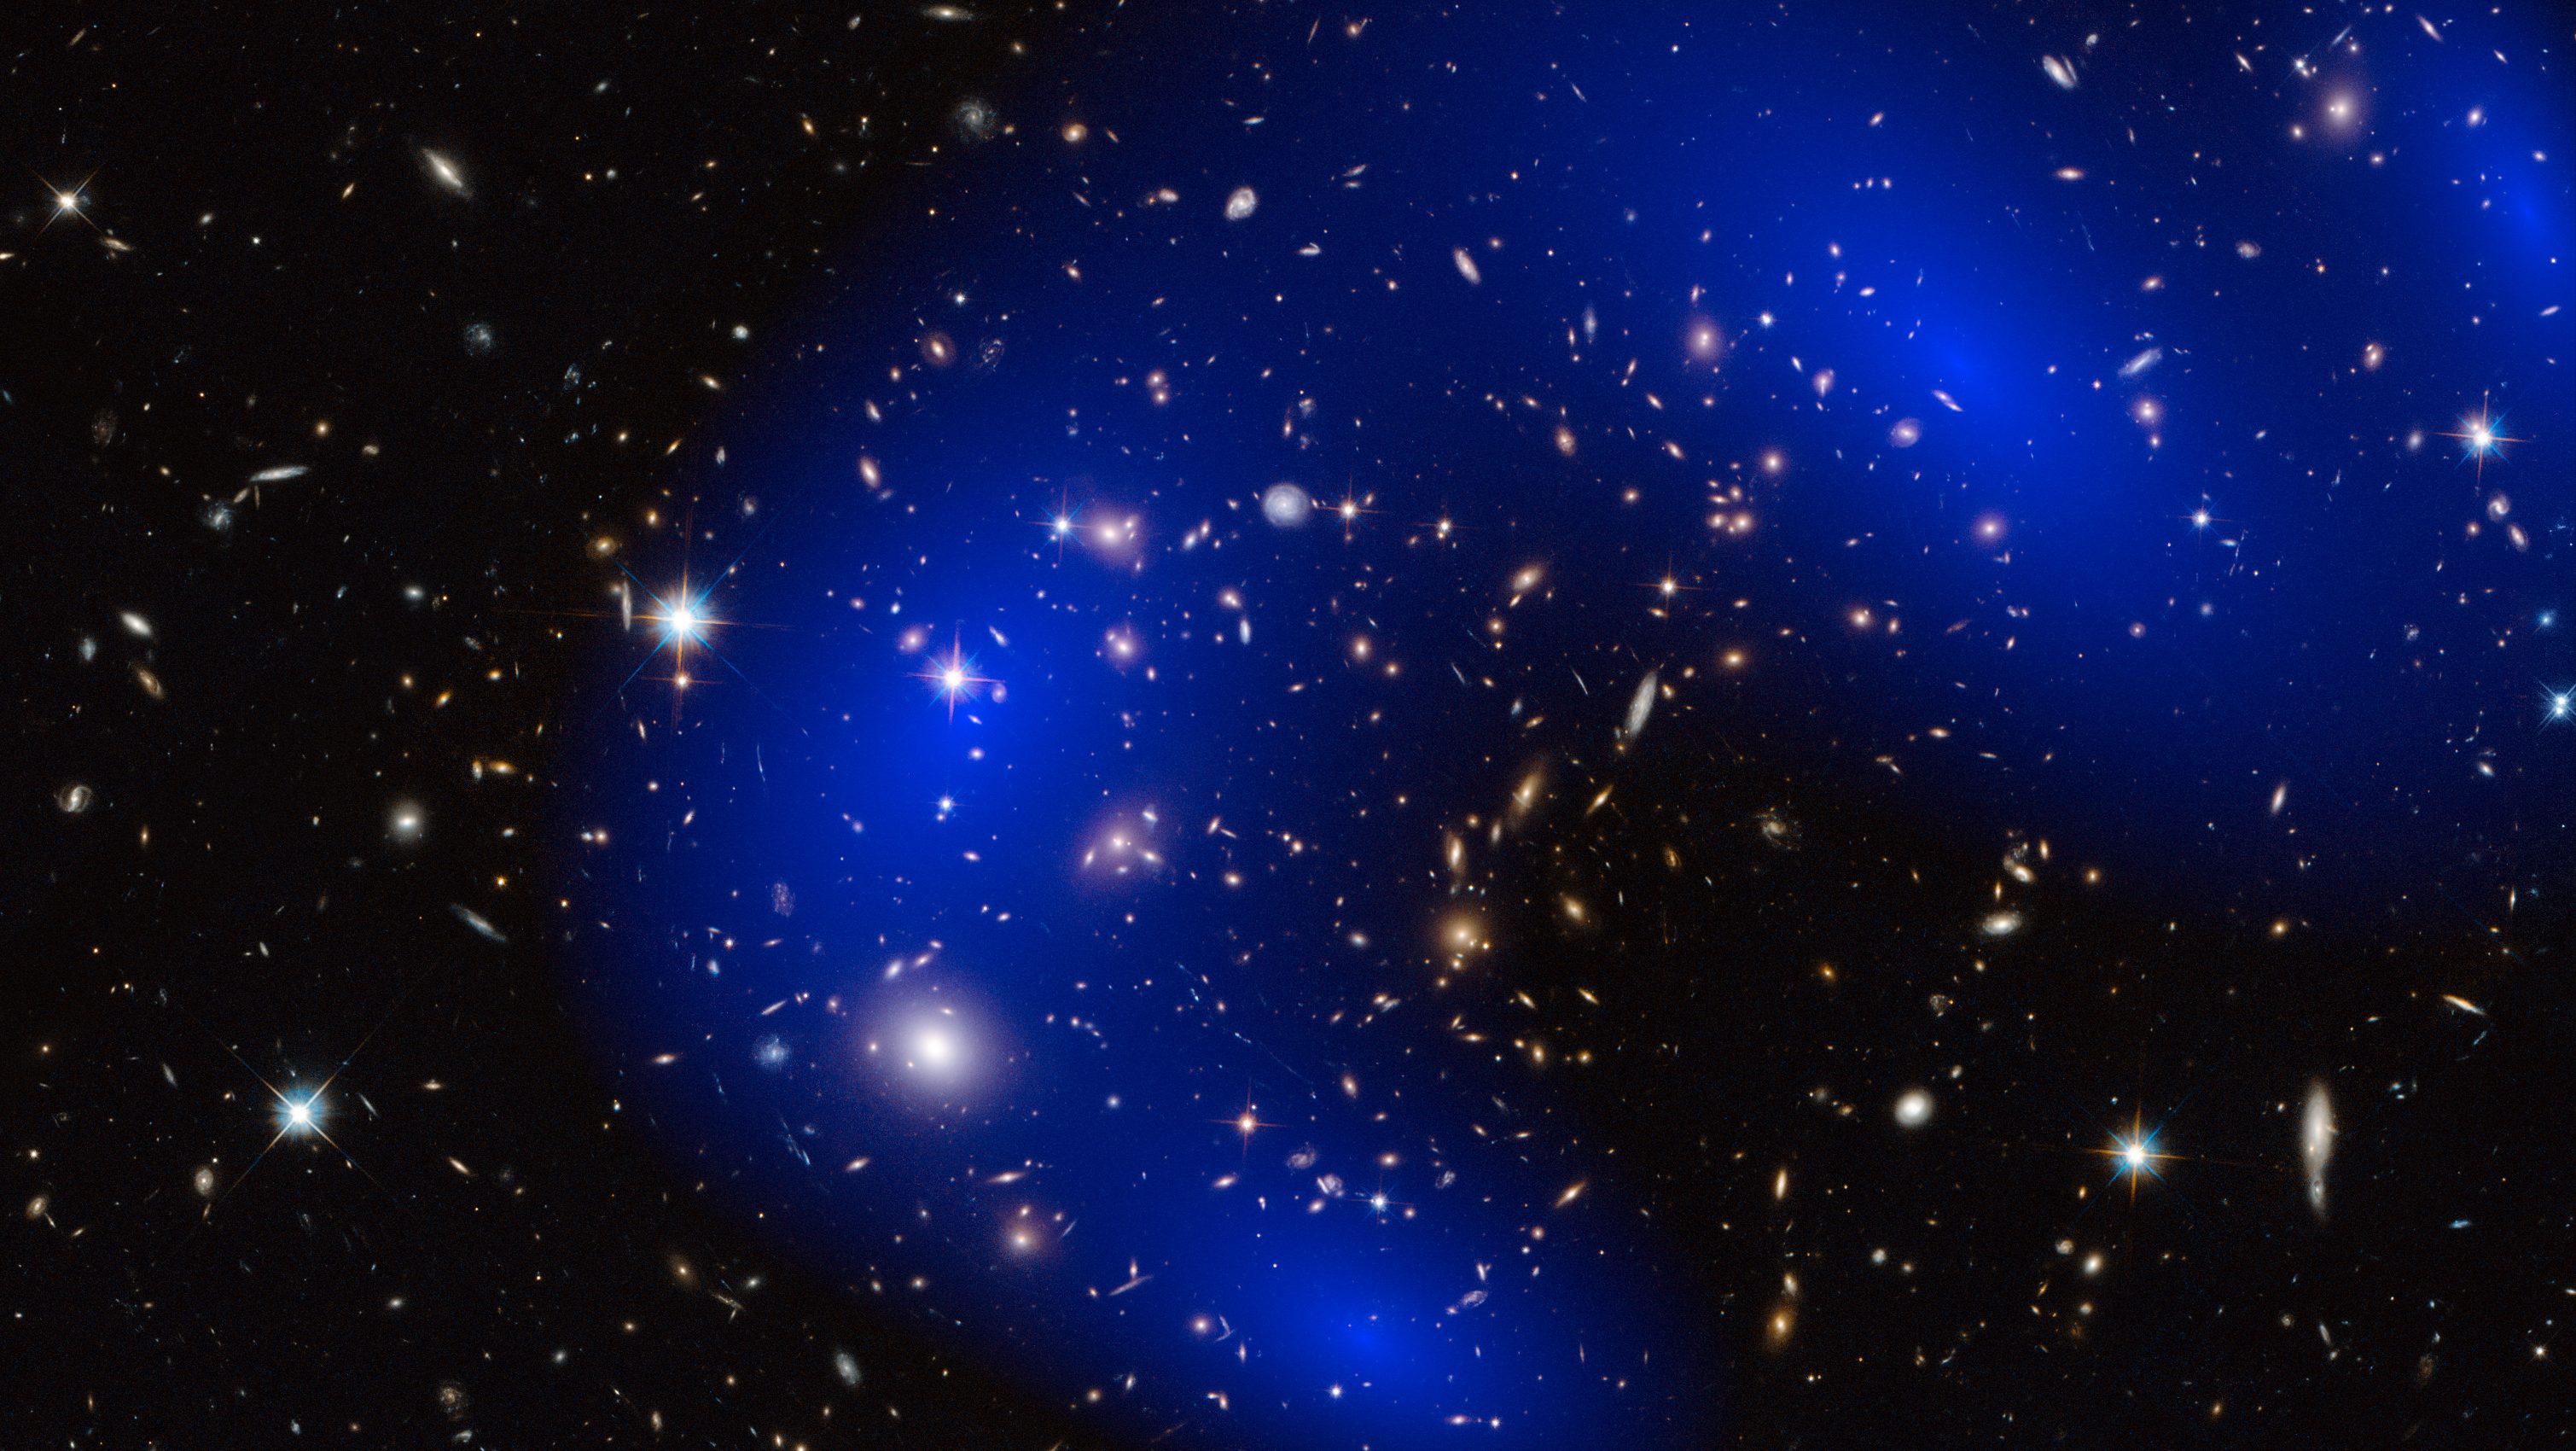 MACS J0717 galaxy cluster dark matter